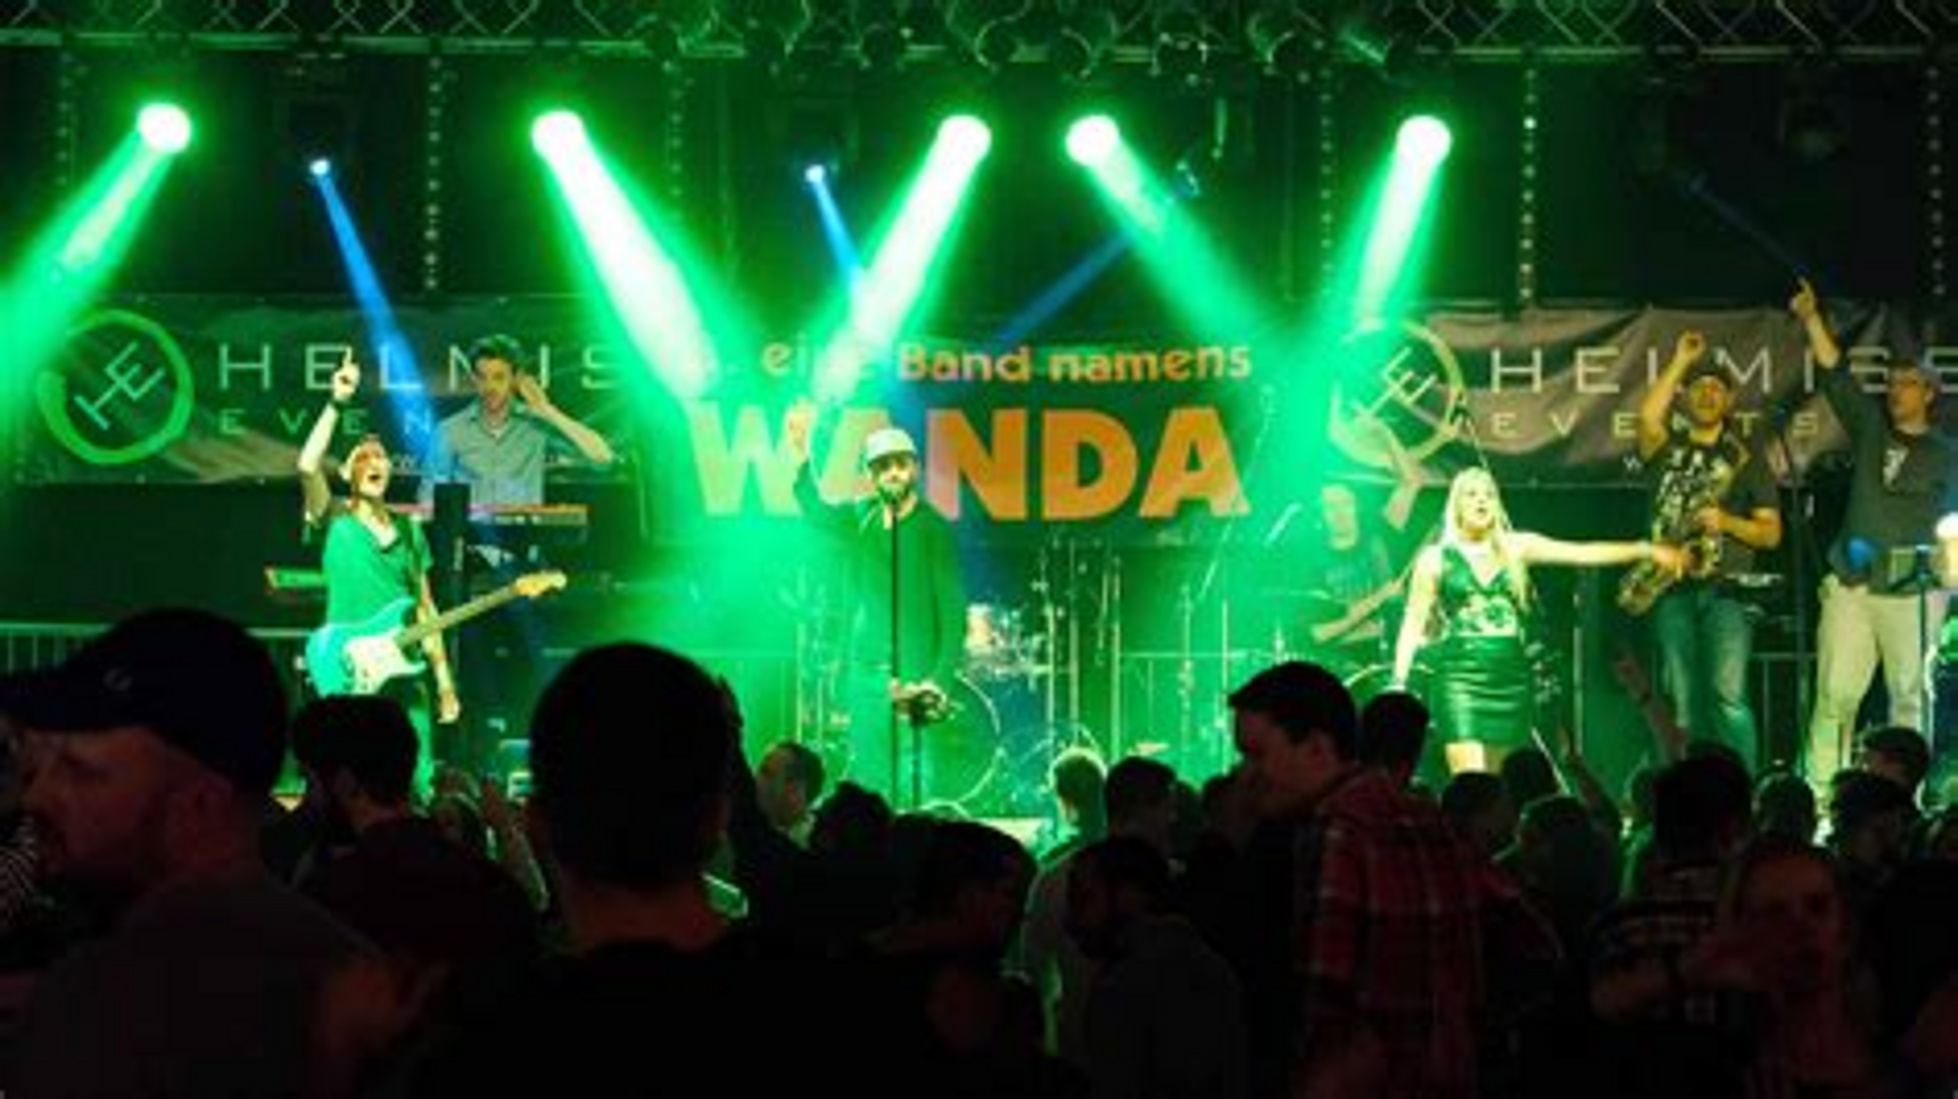 Bühnenfoto: Eine Band namens Wanda